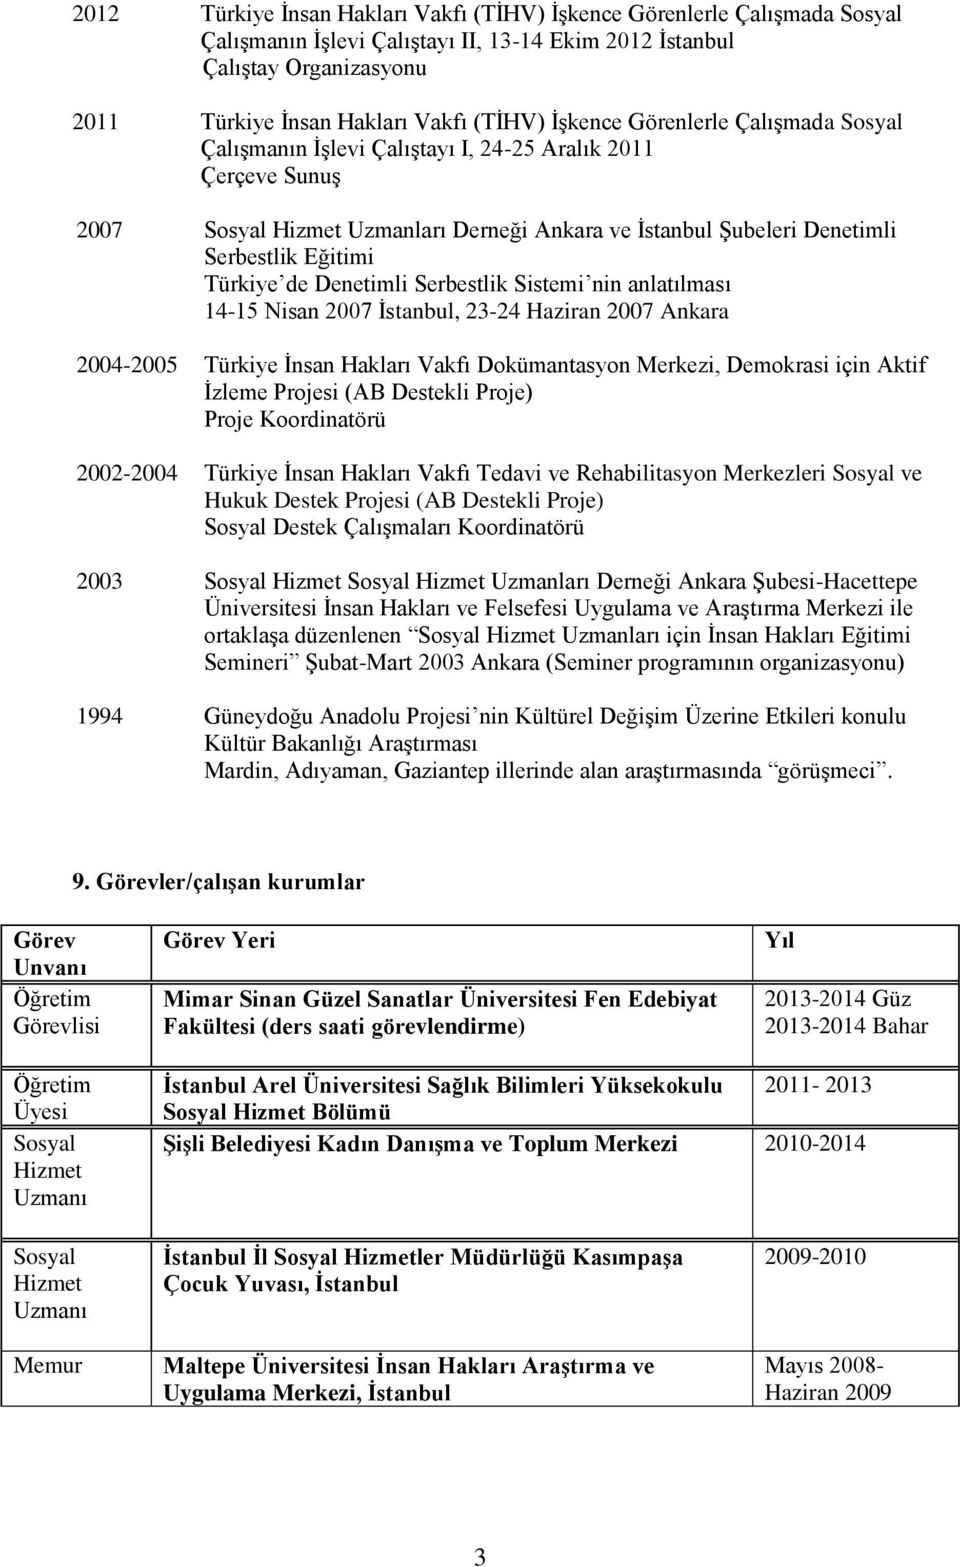 Sistemi nin anlatılması 14-15 Nisan 2007 İstanbul, 23-24 Haziran 2007 Ankara 2004-2005 Türkiye İnsan Hakları Vakfı Dokümantasyon Merkezi, Demokrasi için Aktif İzleme Projesi (AB Destekli Proje) Proje